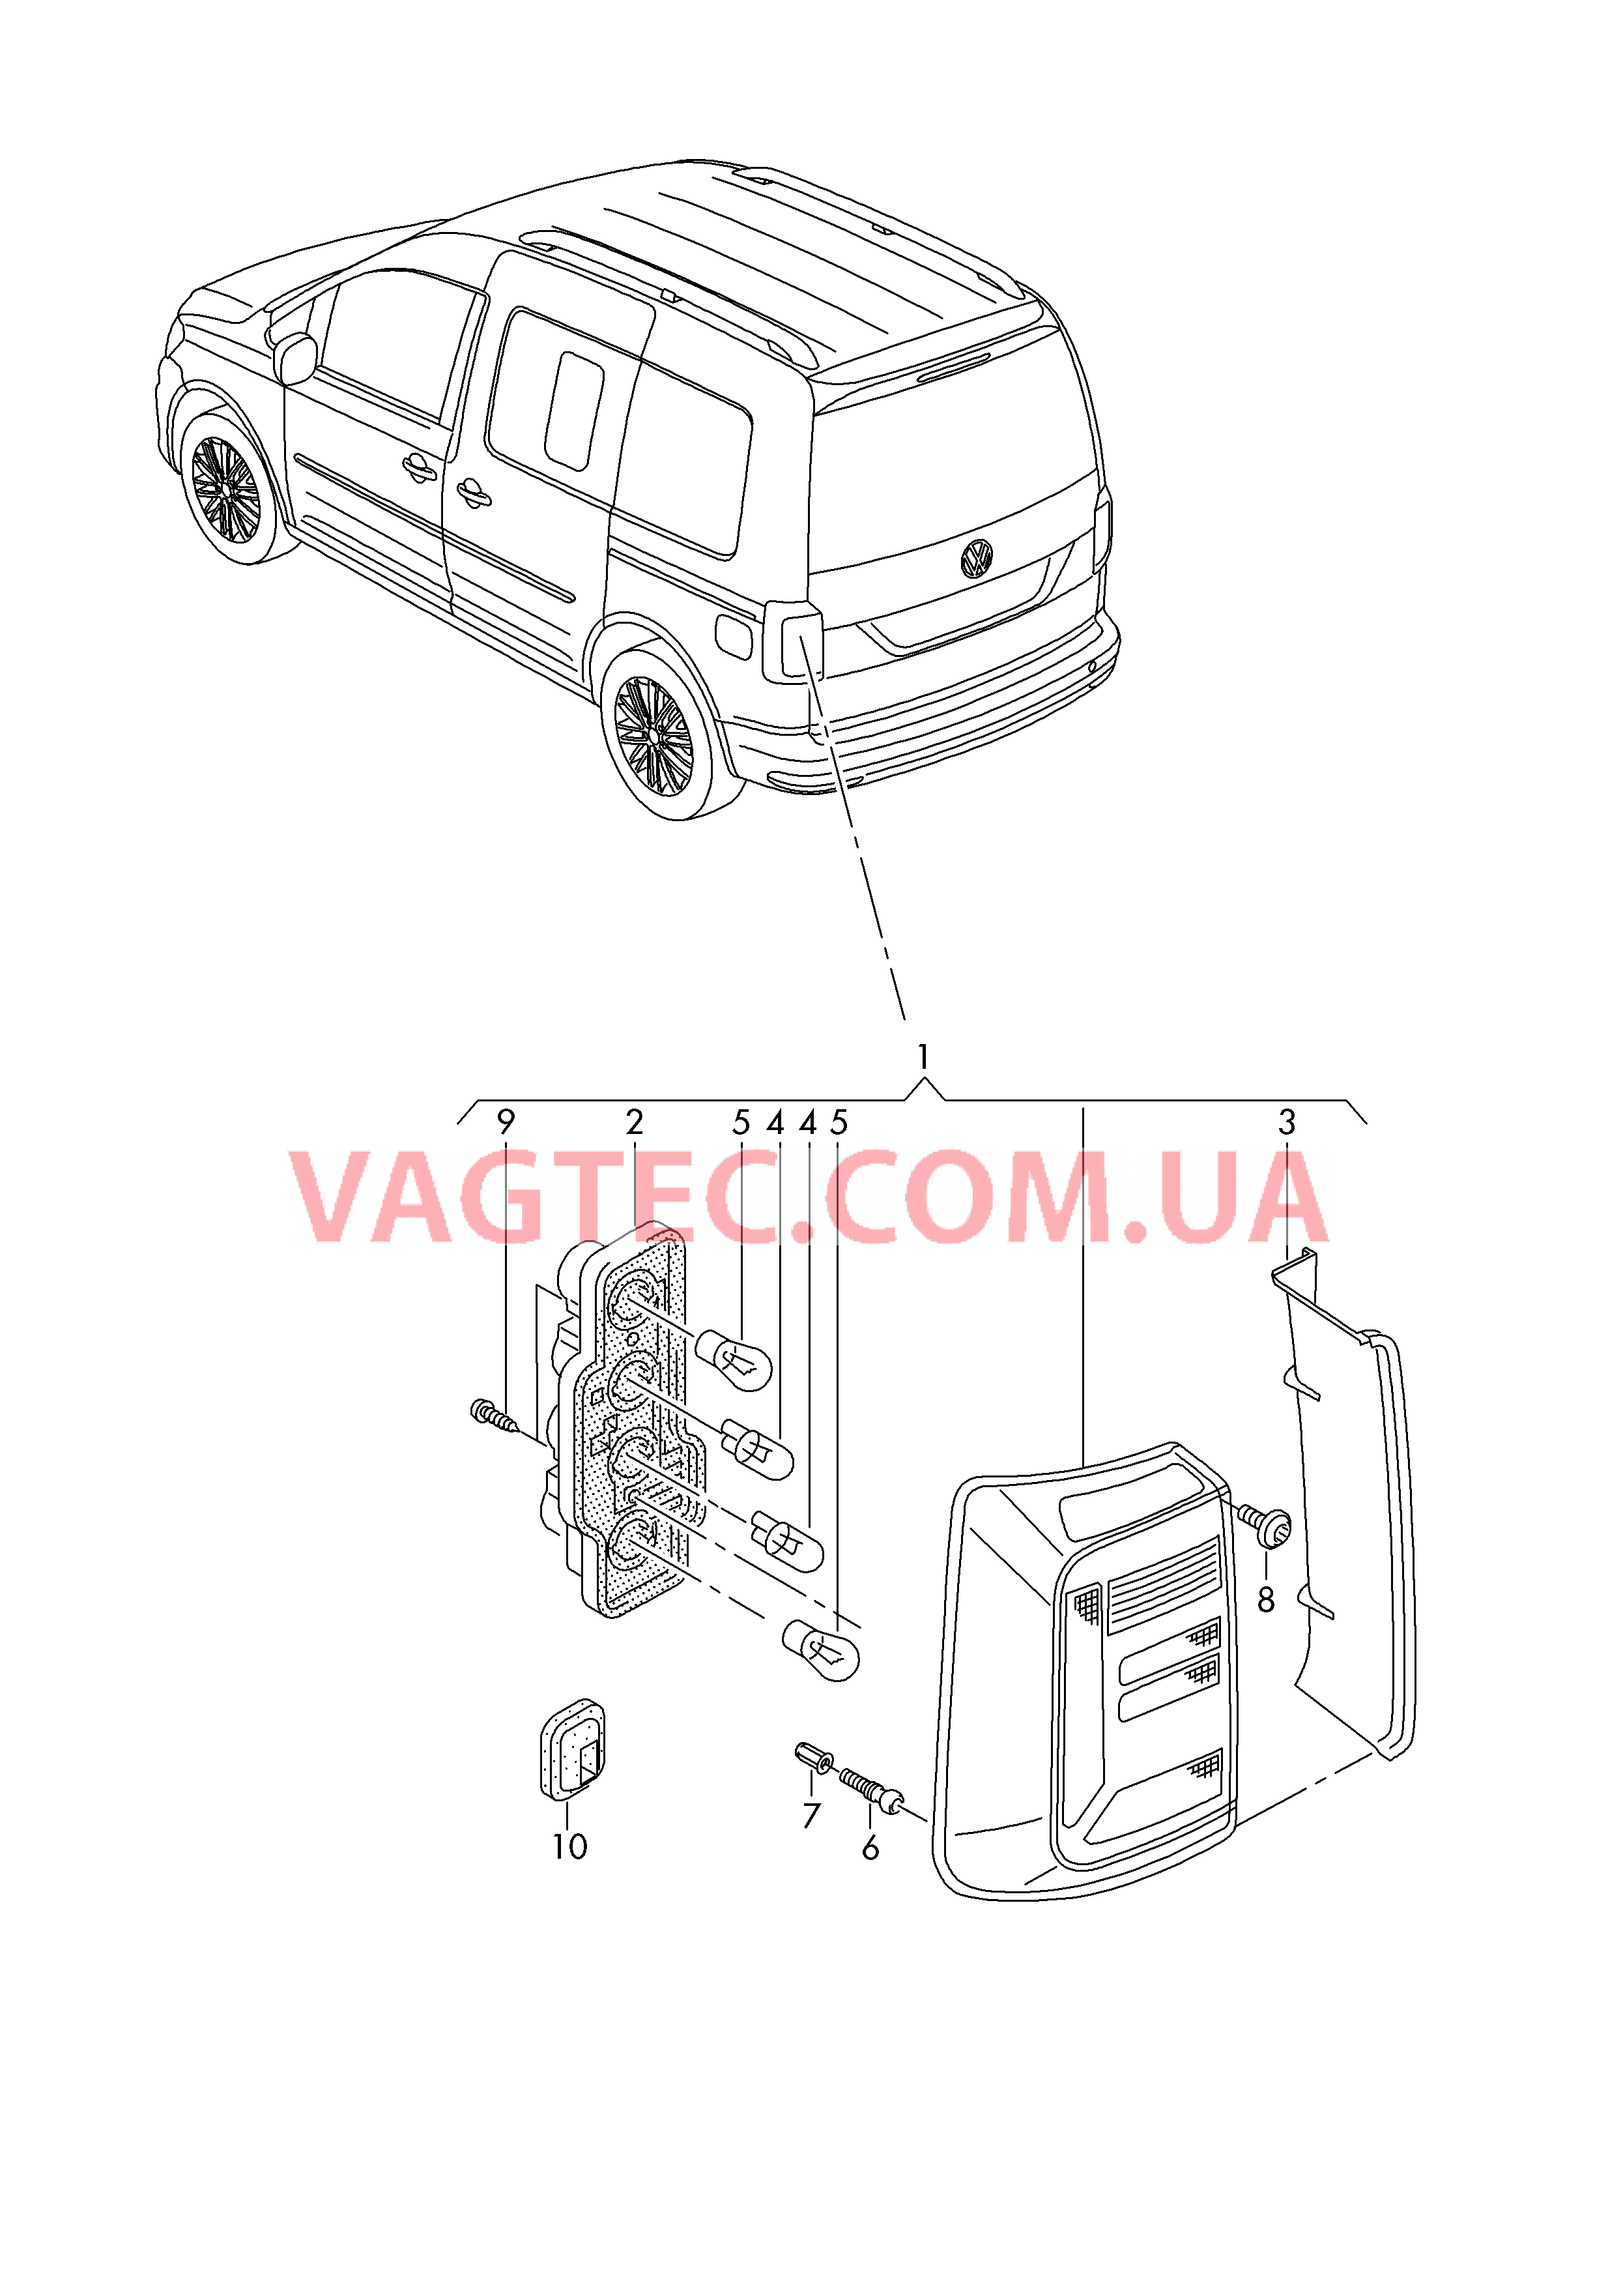 Задний фонарь для а/м с крышкой багажного отсека  для VOLKSWAGEN Caddy 2019